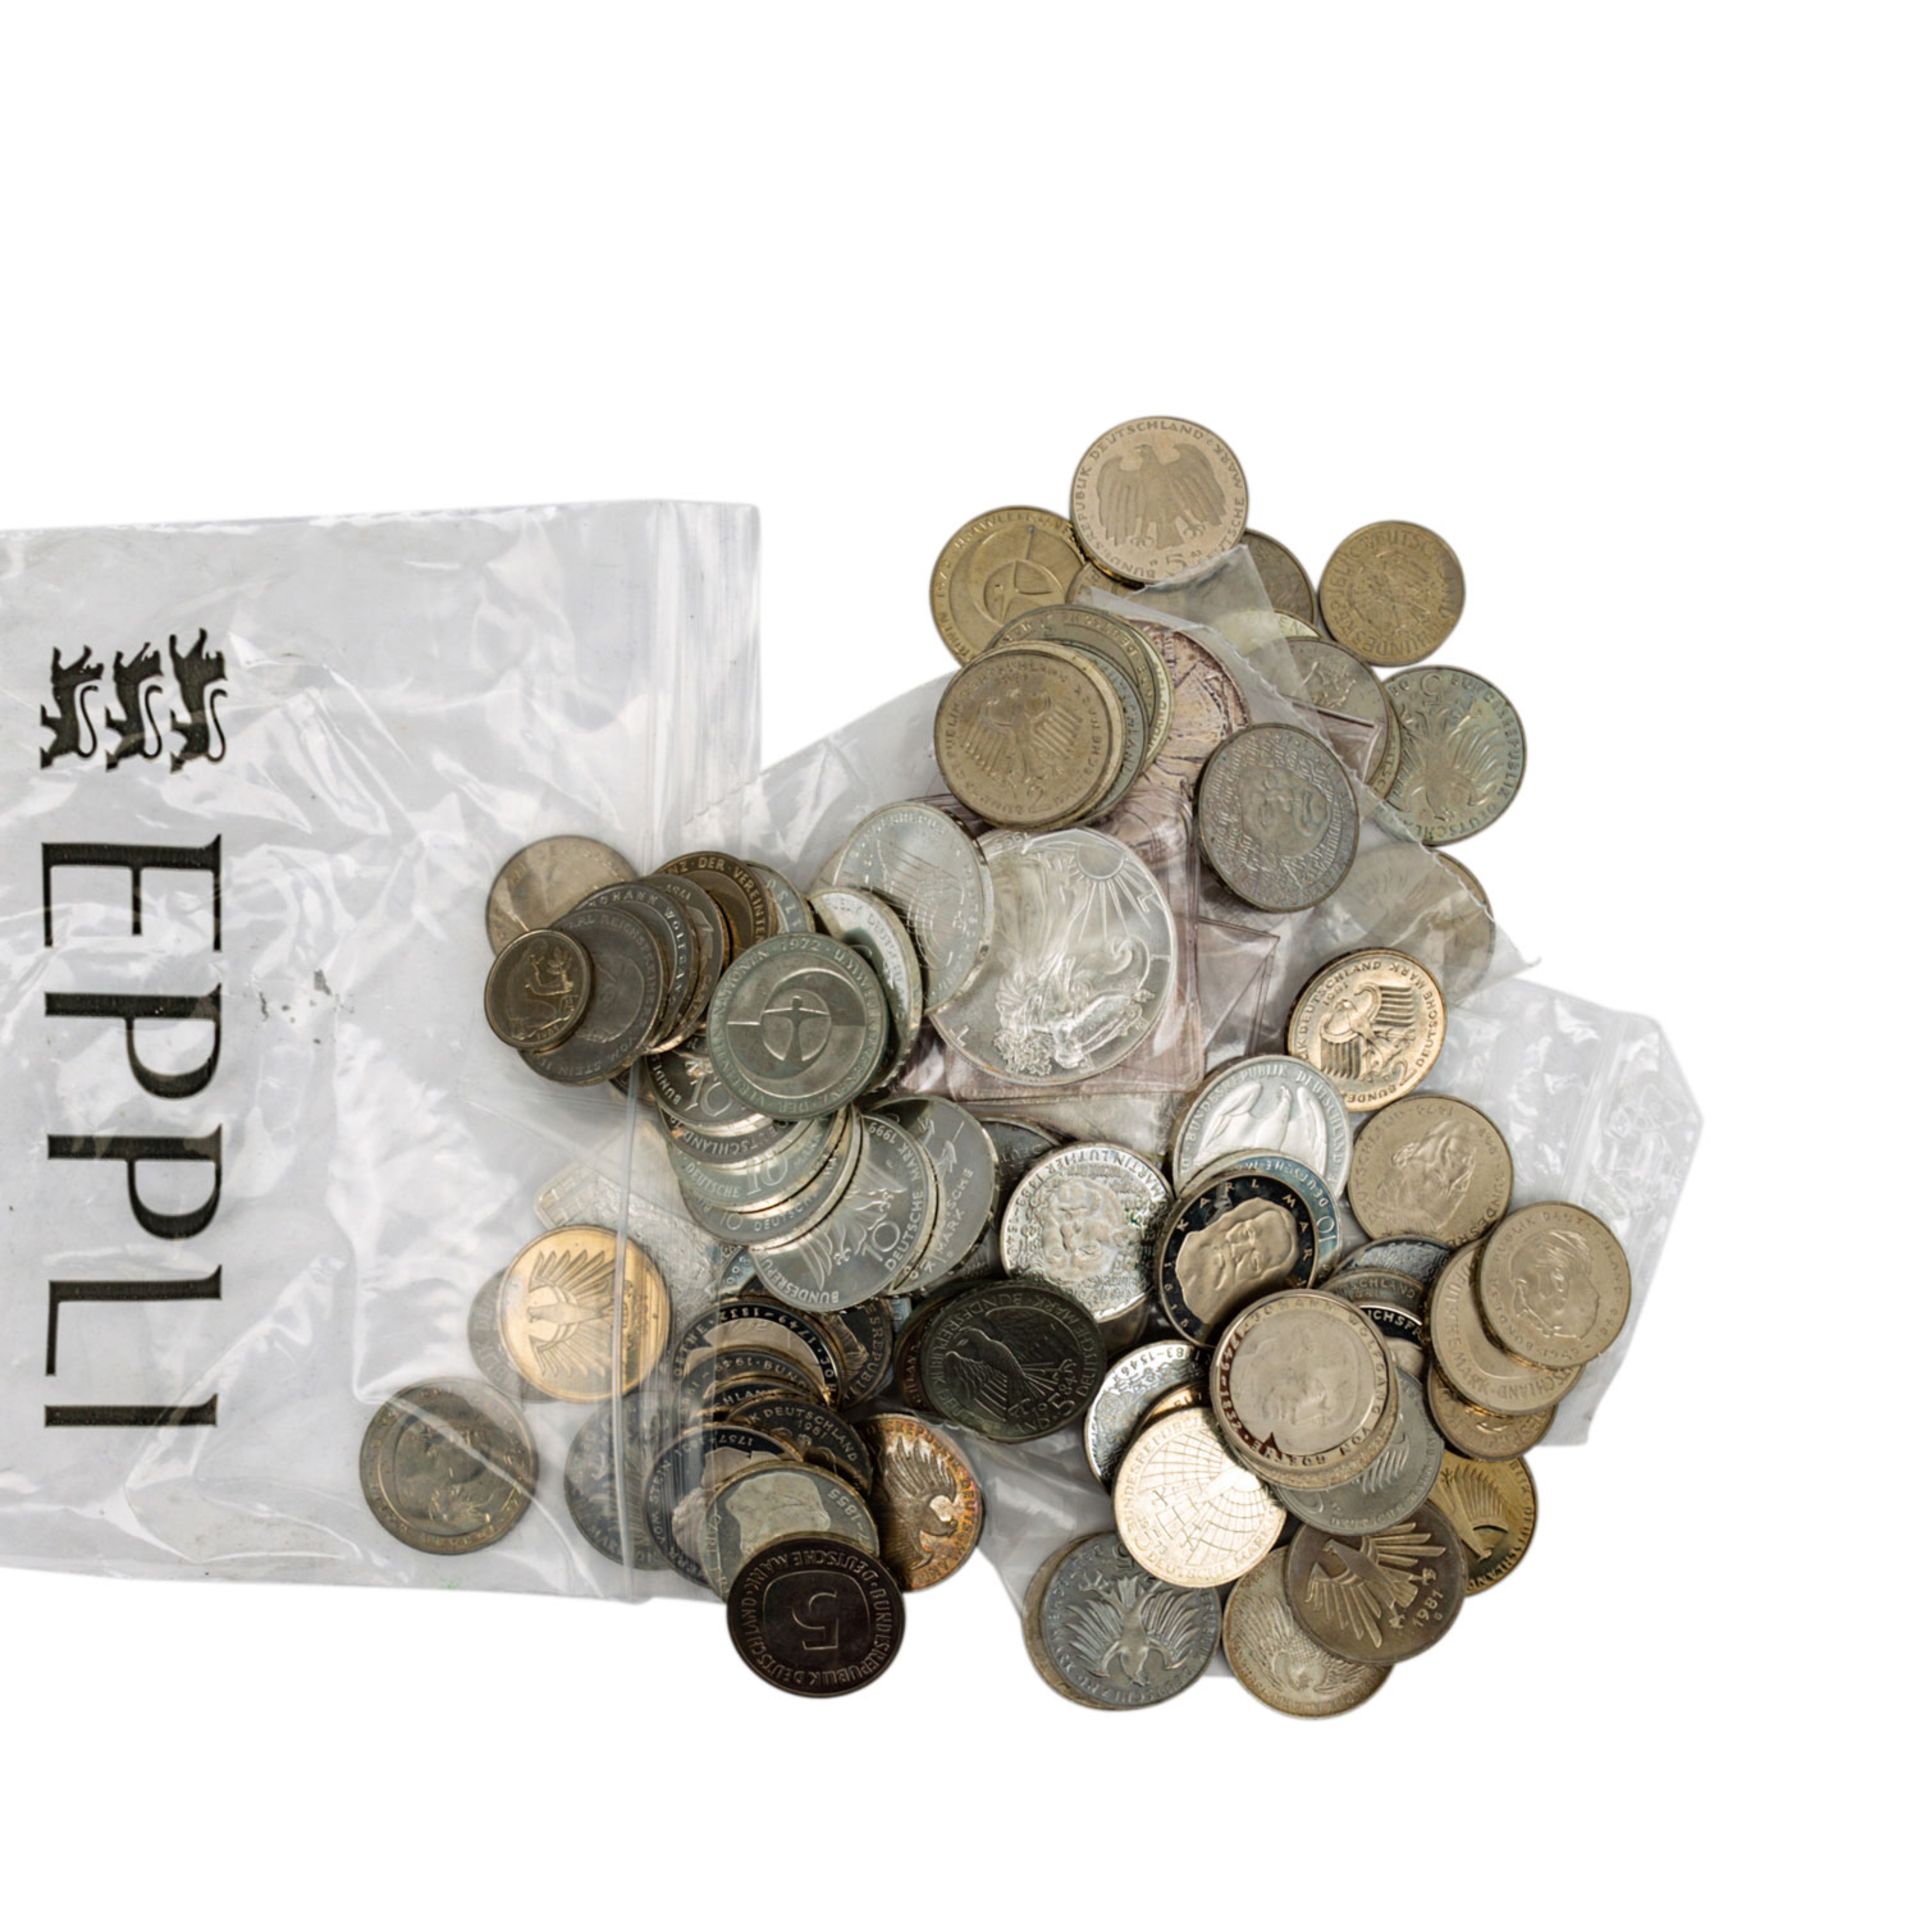 Karton mit Münzen und Medaillen, darin 11 x 1 oz. US Silver Eagle, 3 x 1 oz. Motivbar - Bild 3 aus 14